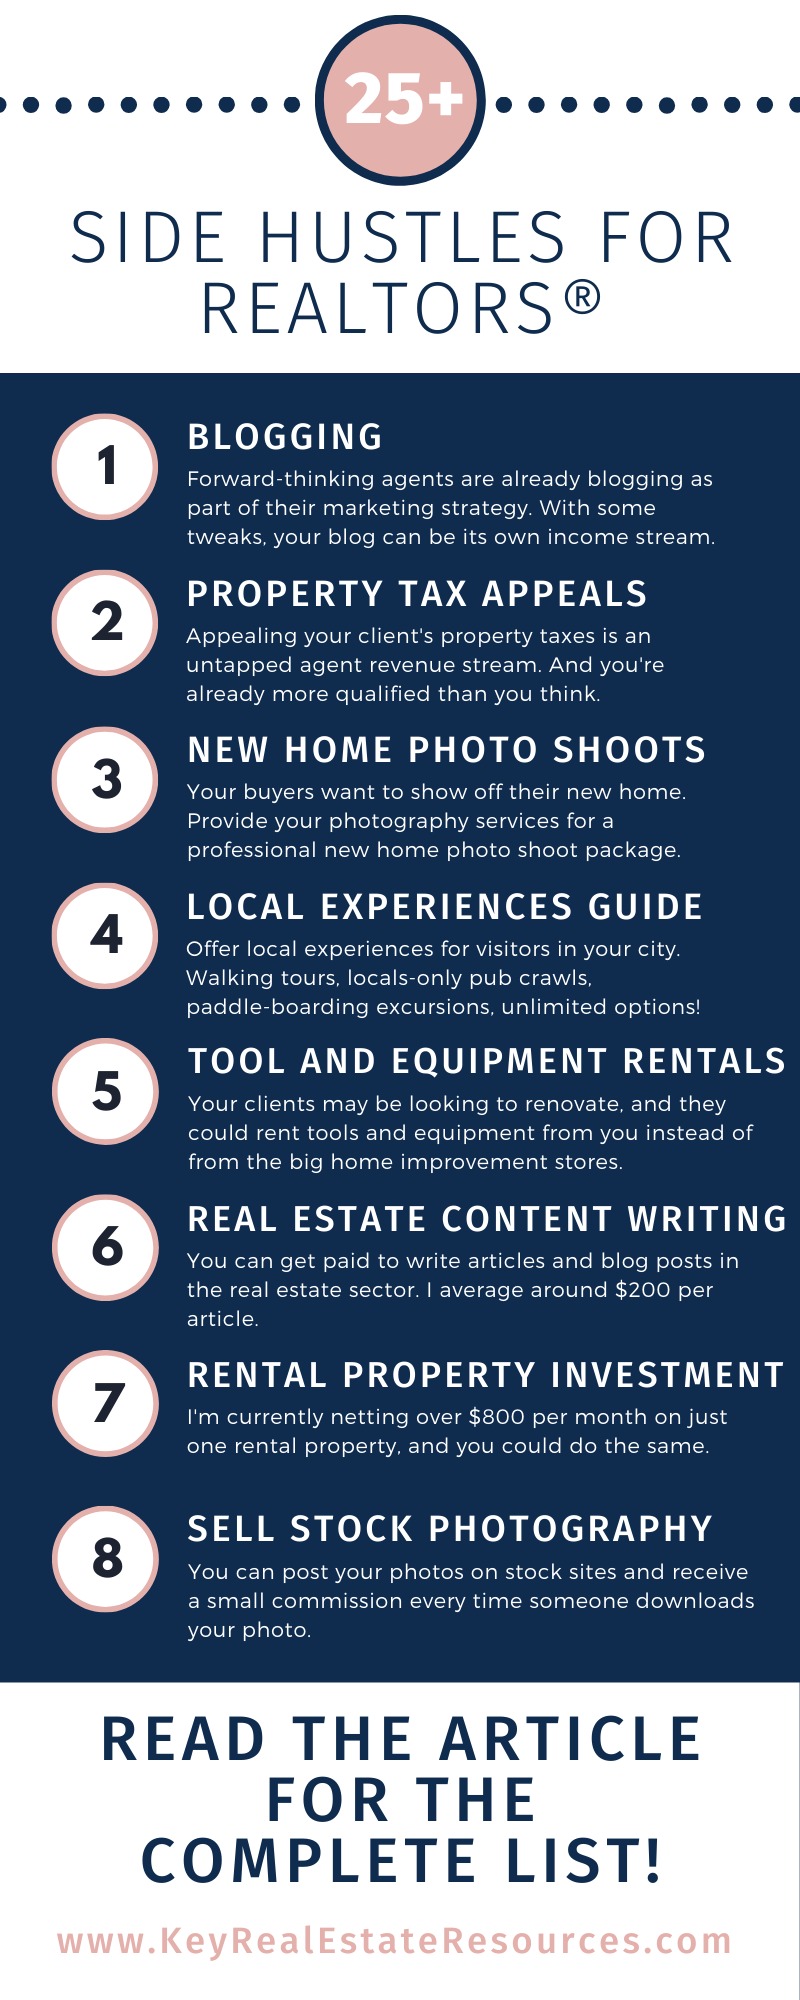 Single Property Real Estate Websites - Real Estate Marketing Blog